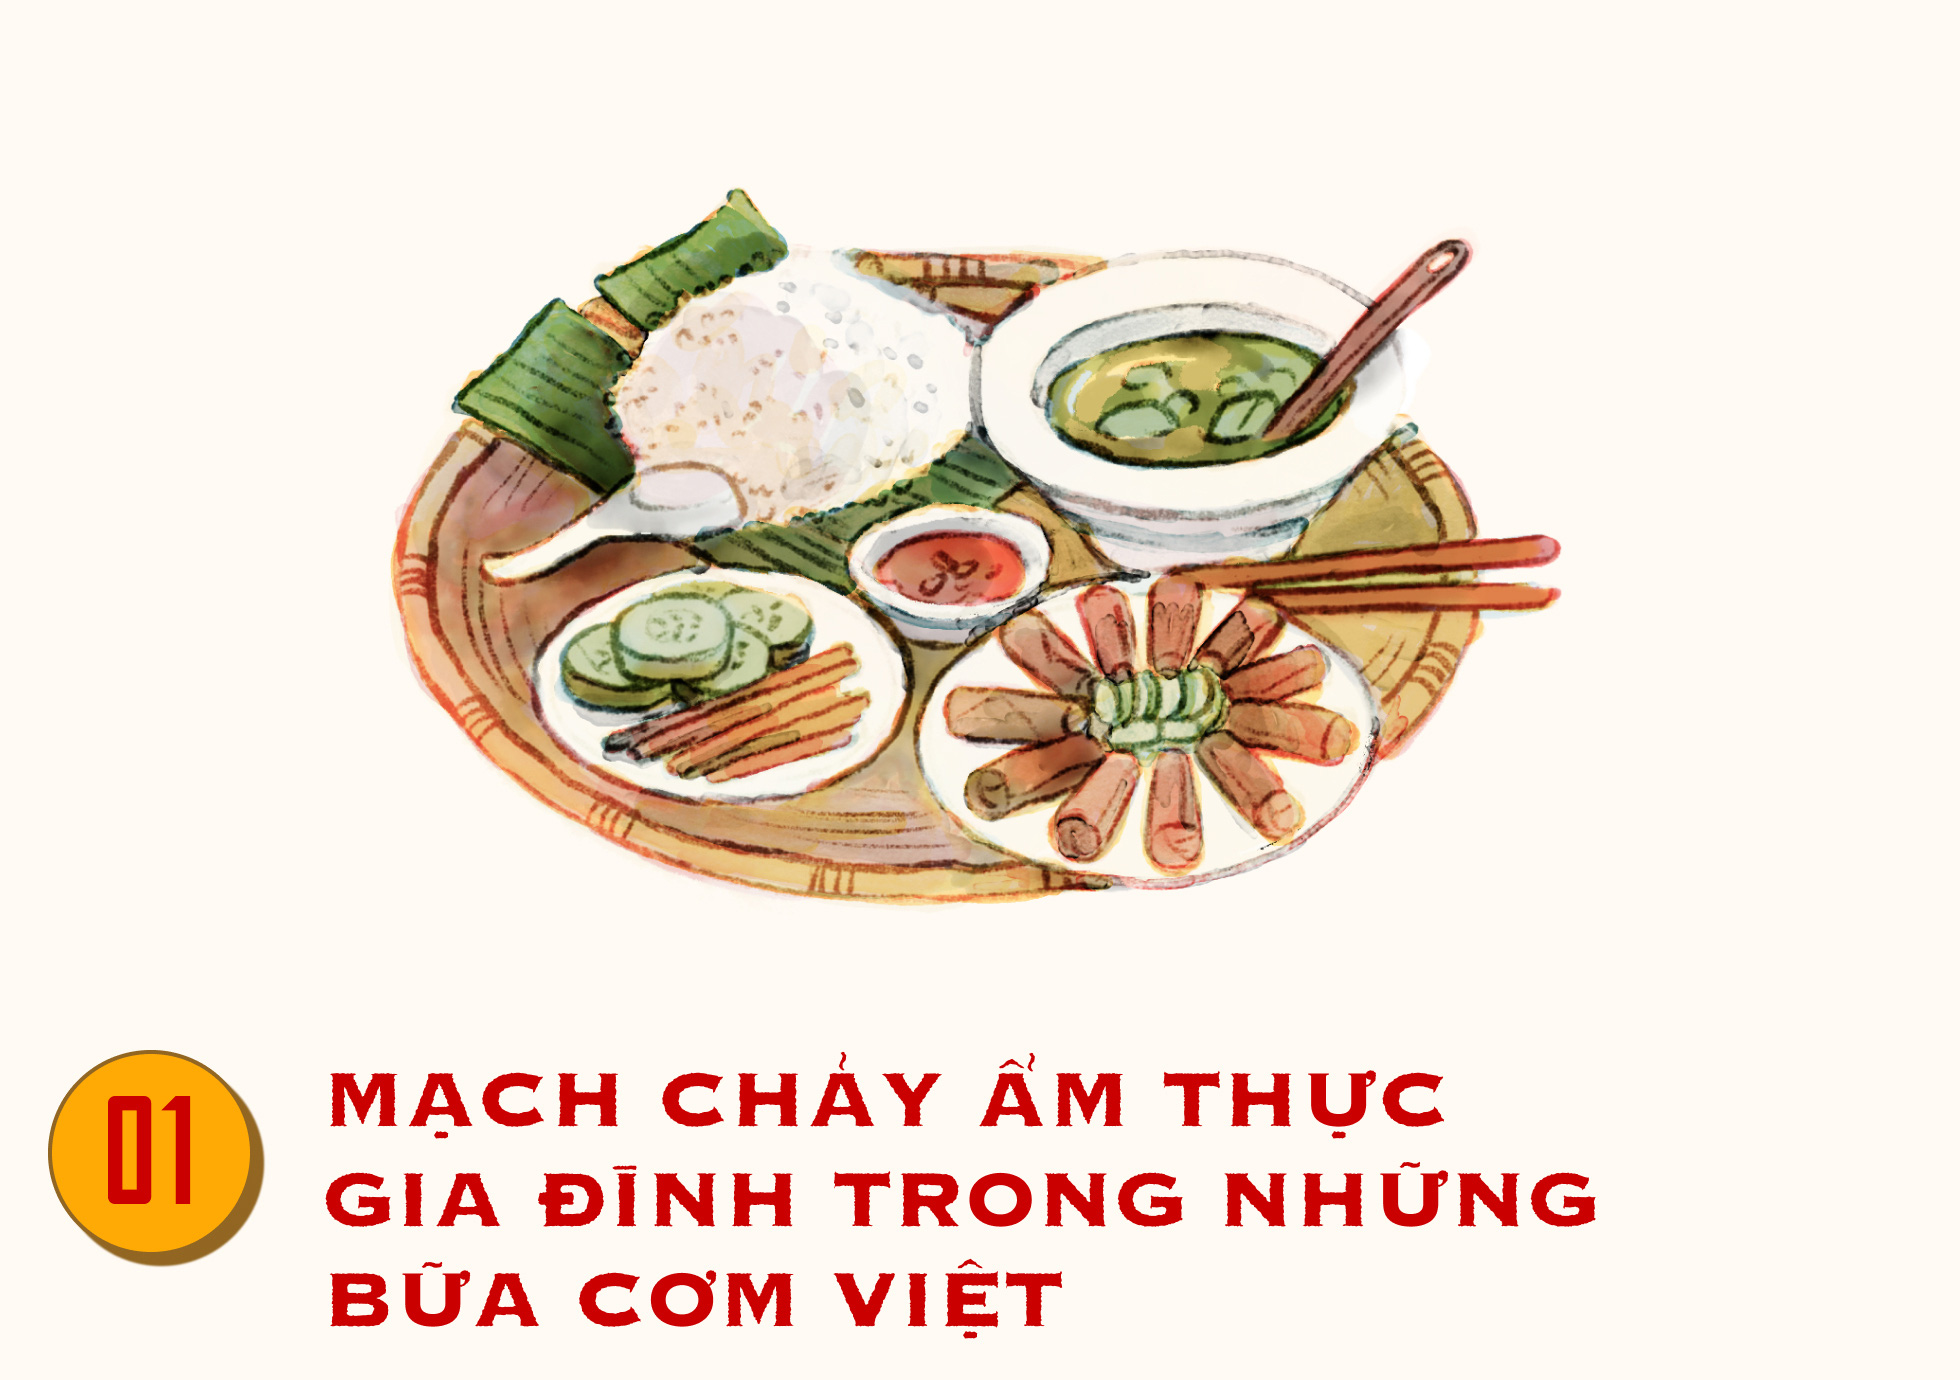 Những bữa cơm Việt truyền thống: Món ăn truyền thống của người Việt tươi ngon, đậm đà hương vị và luôn đem đến cho thực khách một trải nghiệm ẩm thực đặc biệt. Hình ảnh sẽ giúp bạn khám phá những bữa cơm mang dấu ấn văn hóa riêng của người Việt Nam và đắm chìm trong mùi thơm của những món ăn dân dã đầy tình yêu thương.